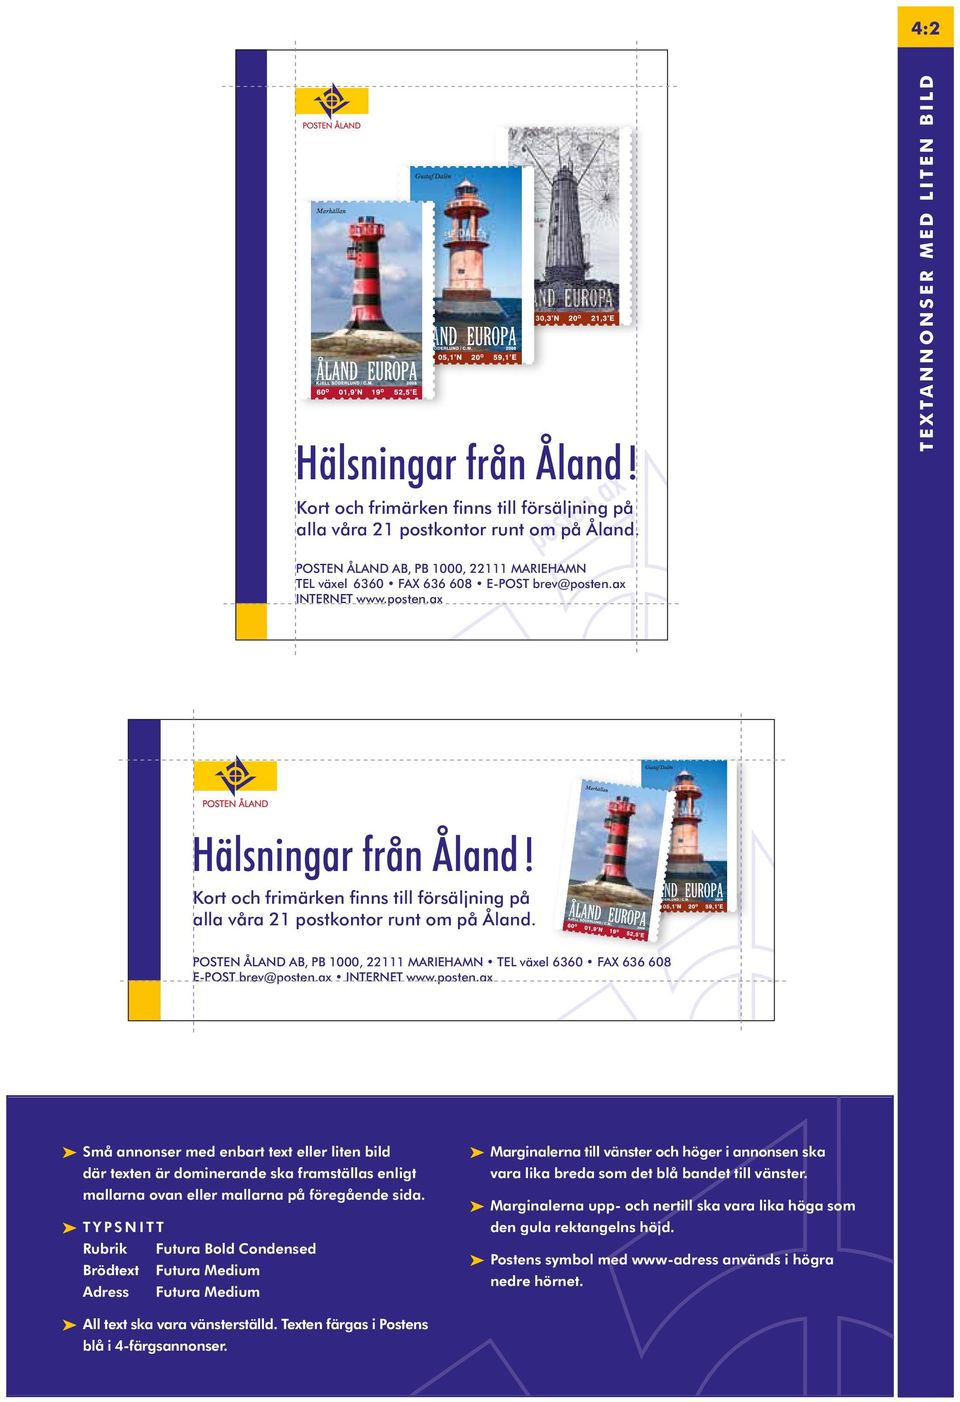 Kort och frimärken finns till försäljning på alla våra 2 postkontor runt om på Åland. POSTEN ÅLAND AB, PB 000, 22 MARIEHAMN TEL växel 6360 FAX 636 608 E-POST brev@posten.